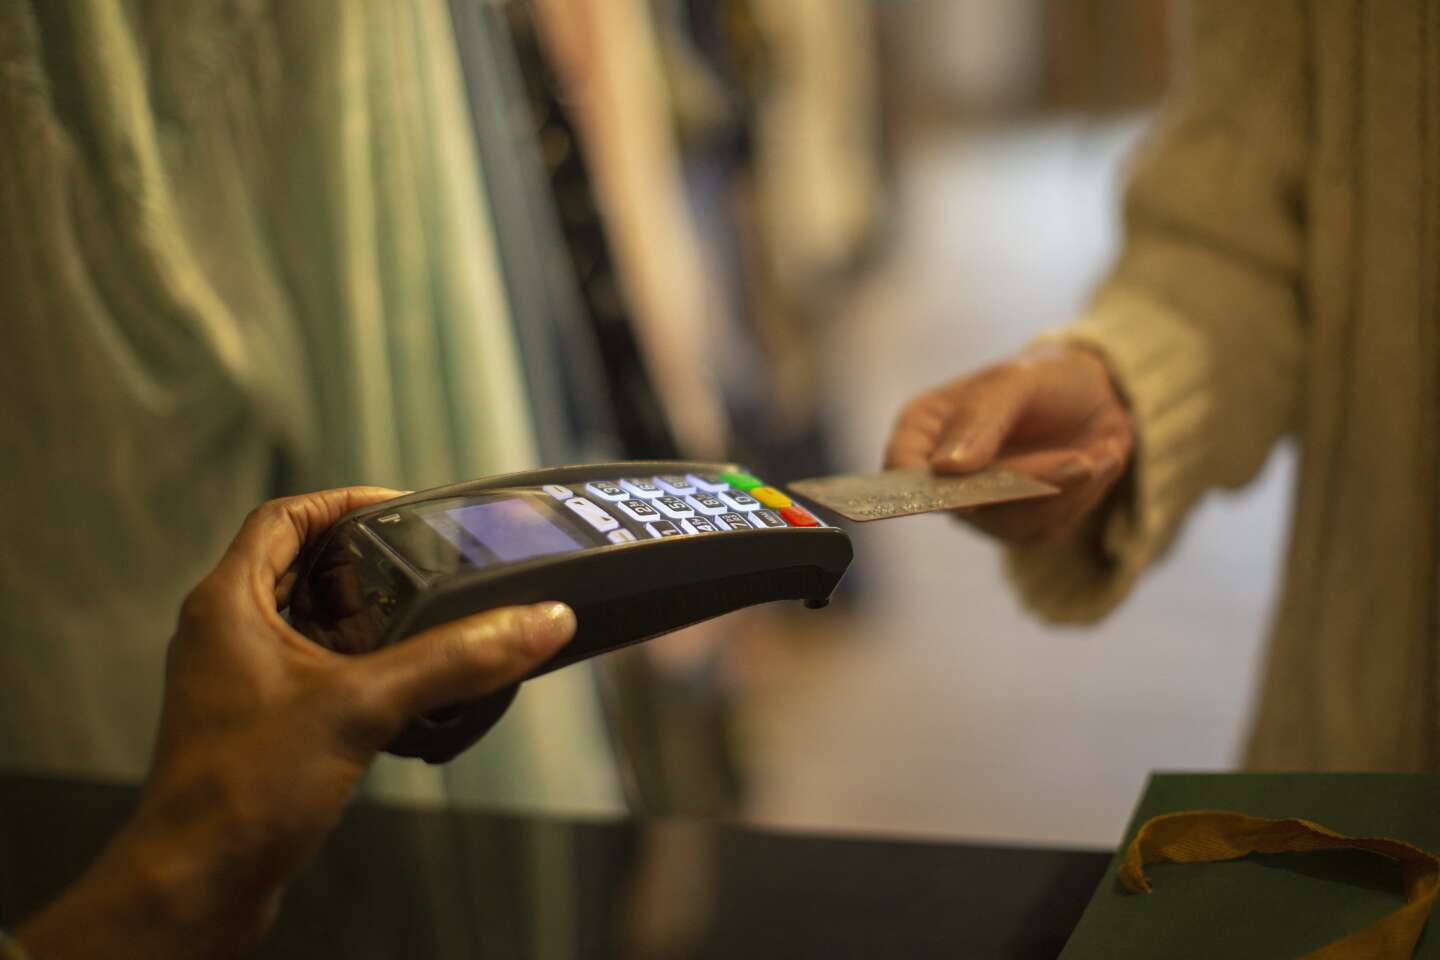 Une panne informatique perturbe les paiements par carte dans plusieurs enseignes comme Carrefour, Auchan, Ikea et McDonald’s